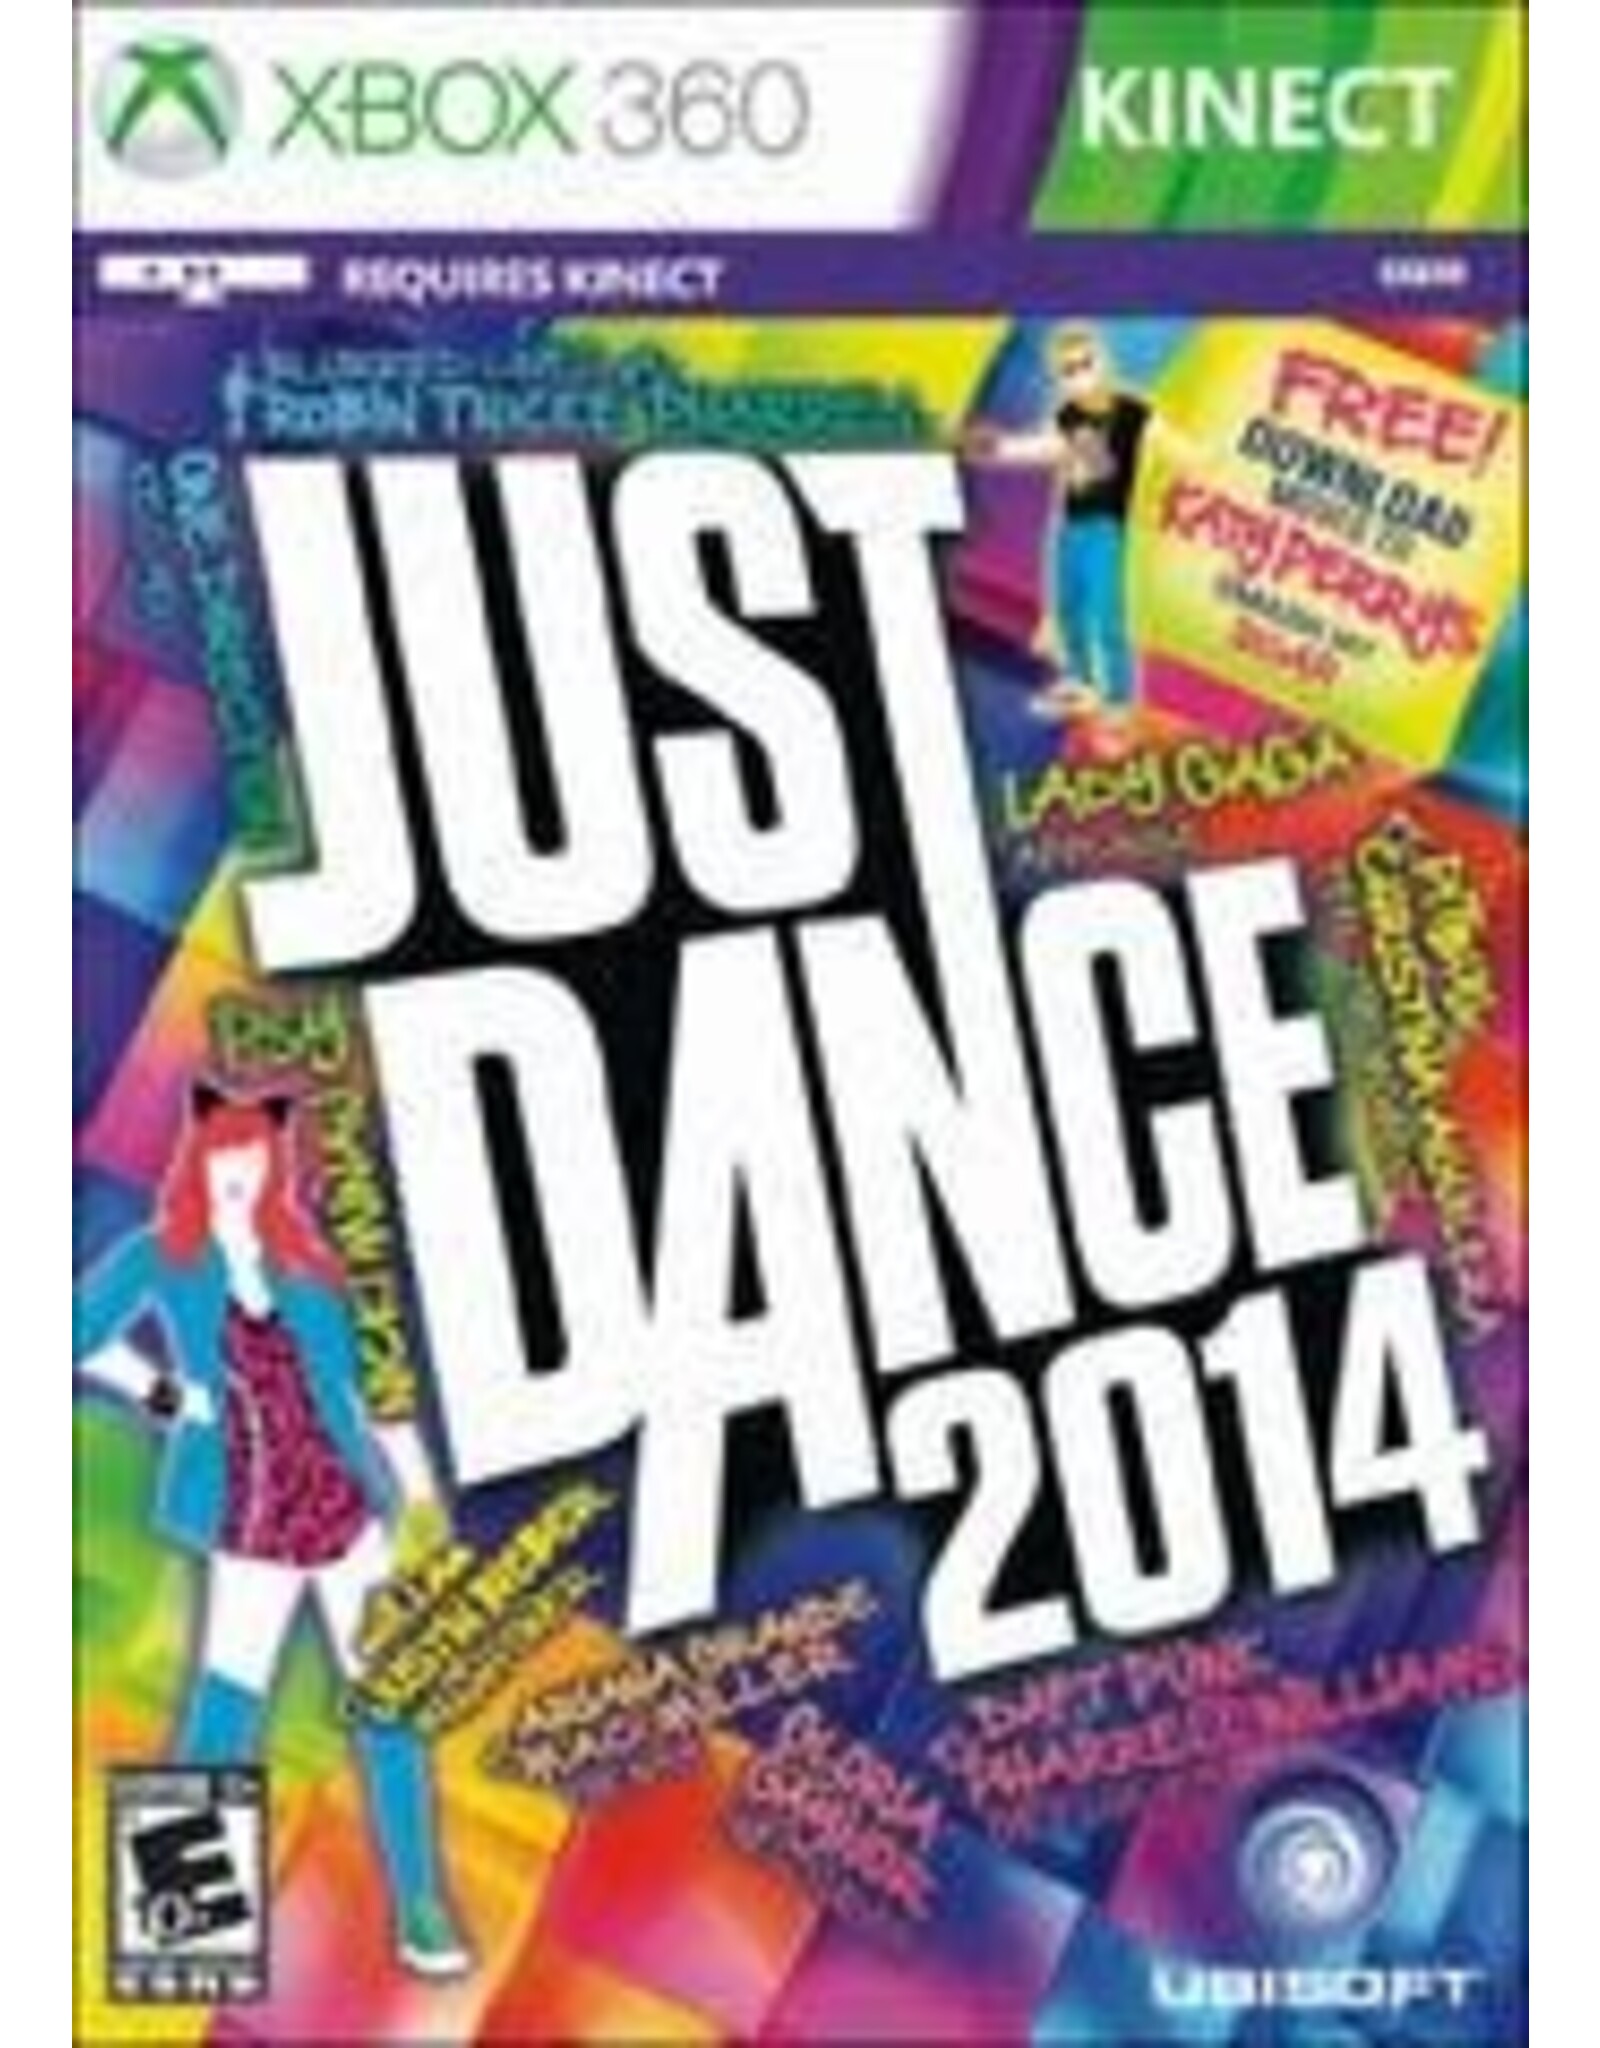 Xbox 360 Just Dance 2014 (CiB)